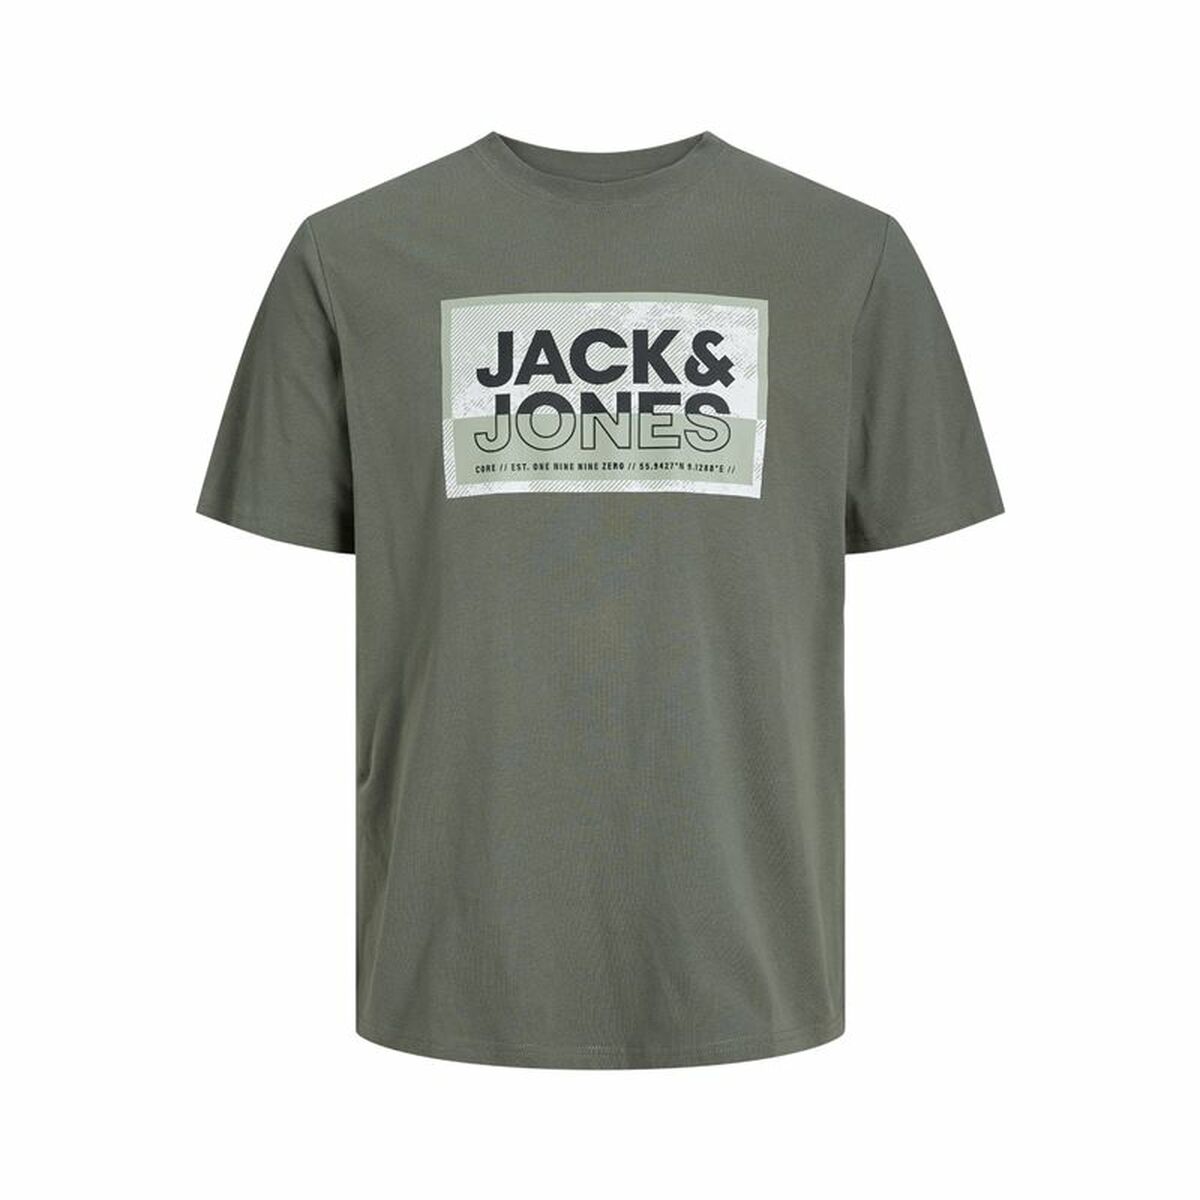 T shirt à manches courtes Enfant Jack & Jones logan Agave Vert foncé